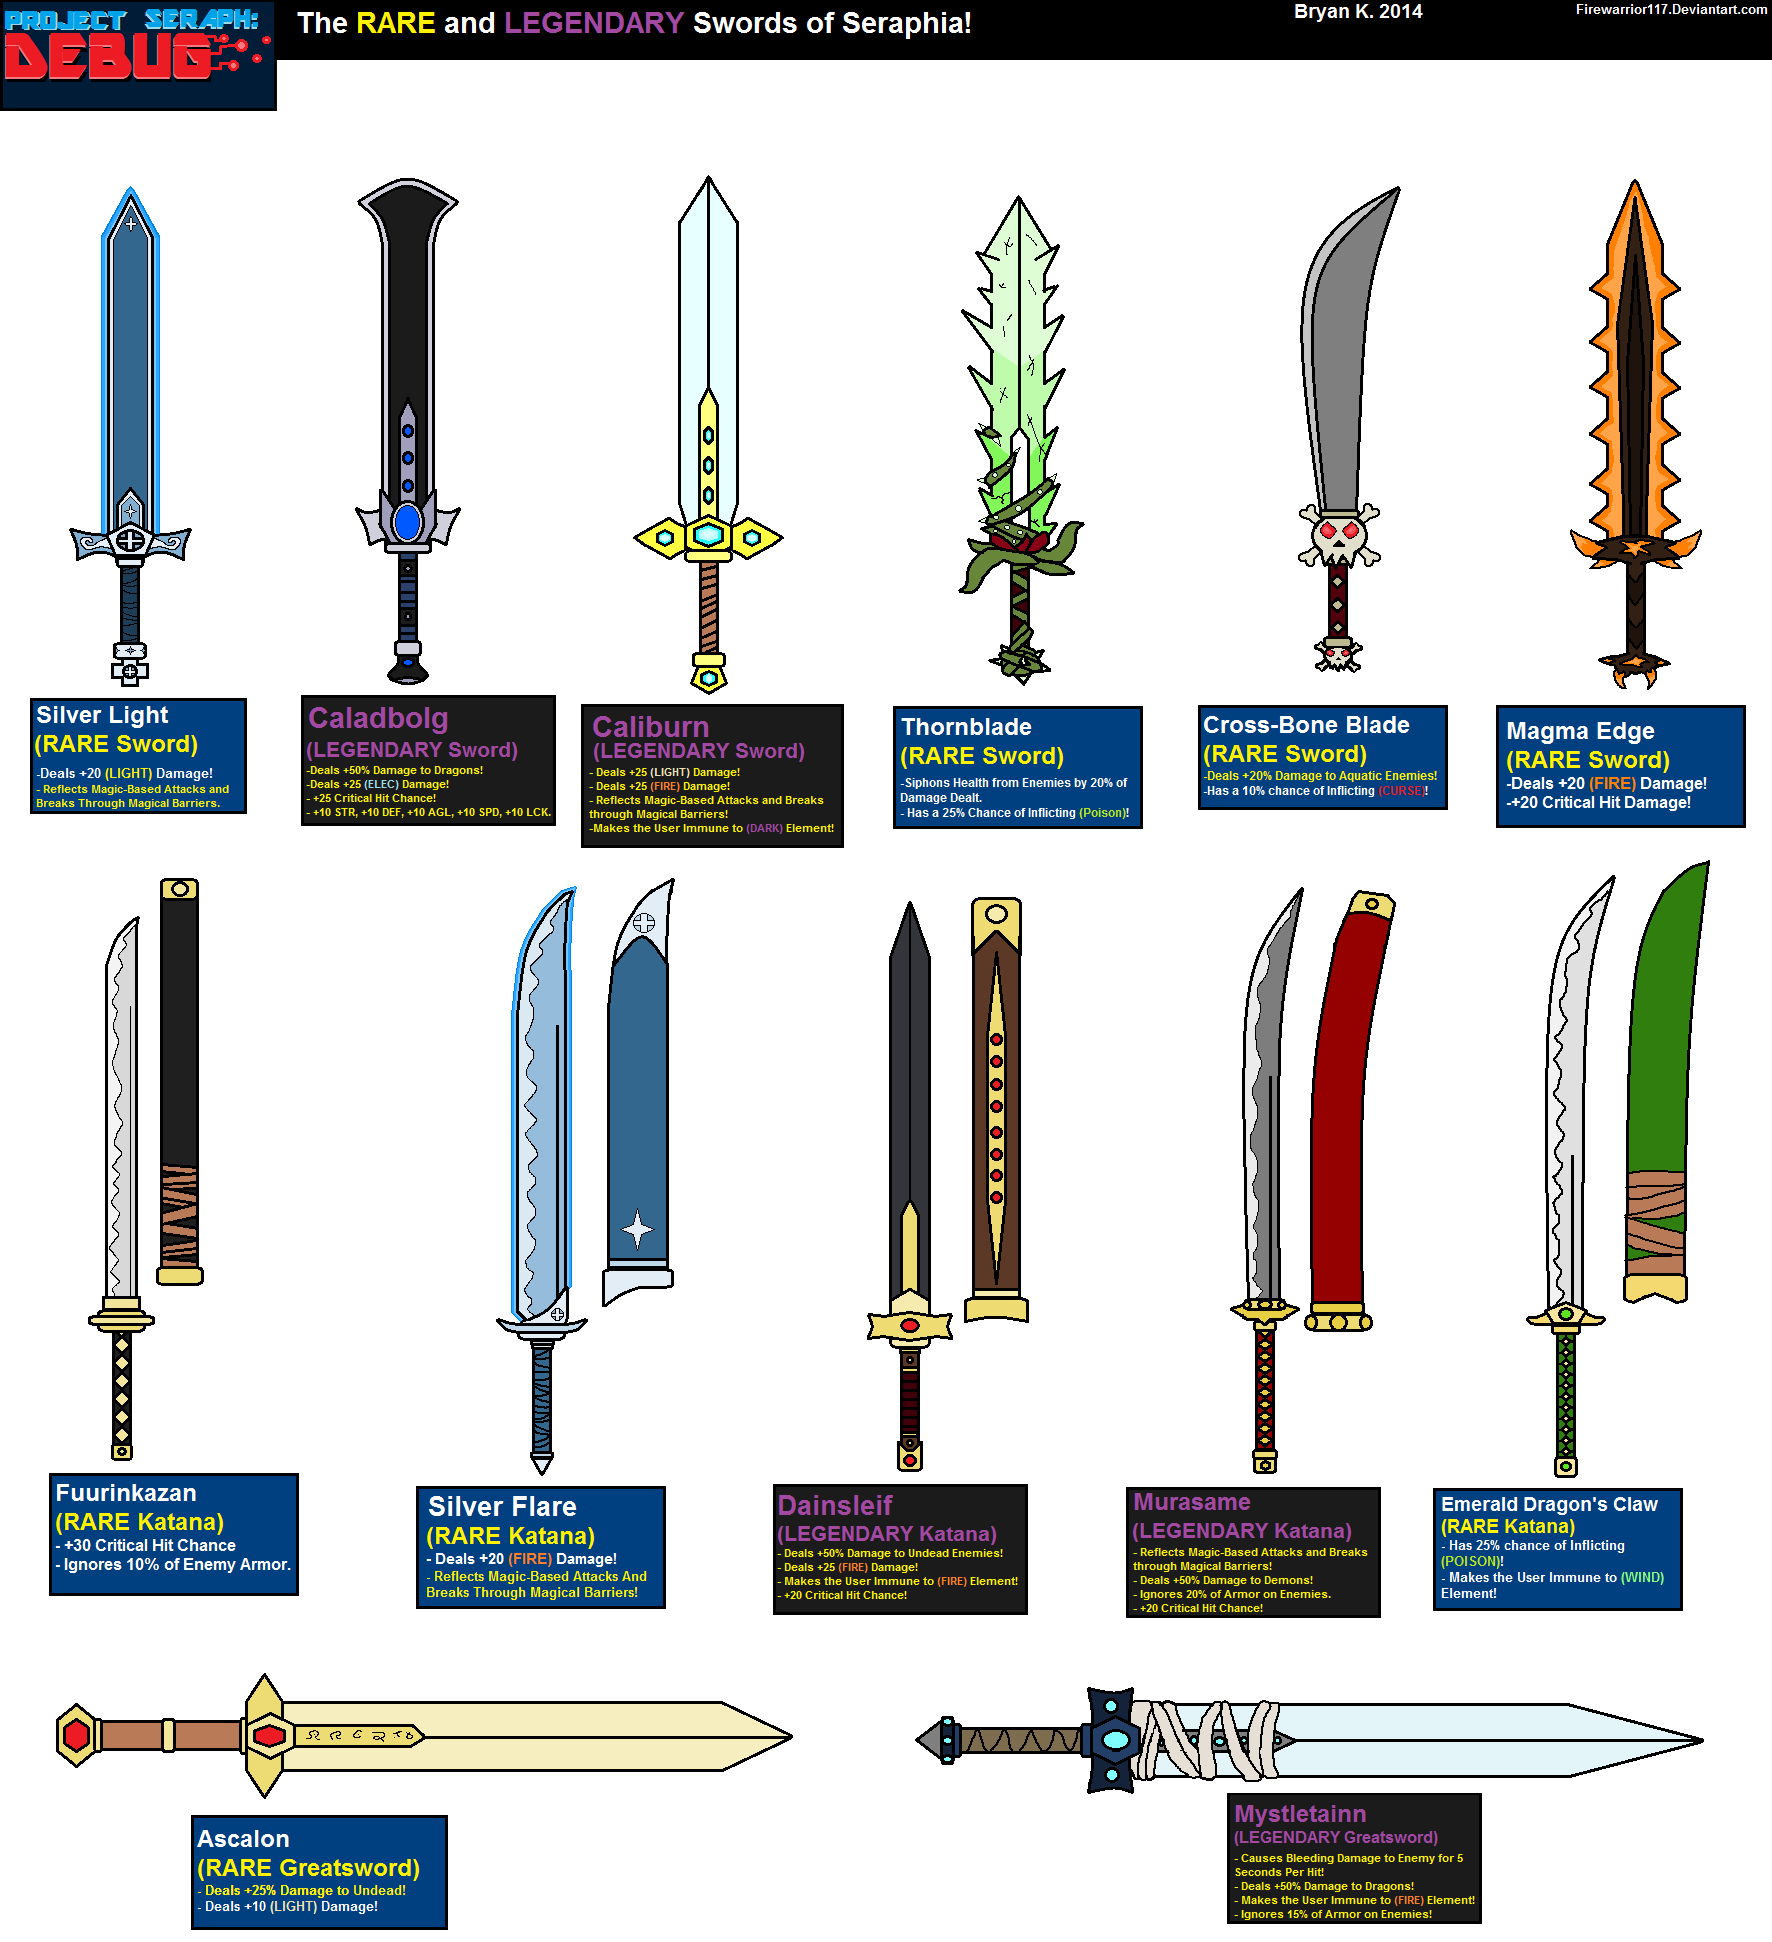 Swords Mobile Games by A-Cermak on DeviantArt